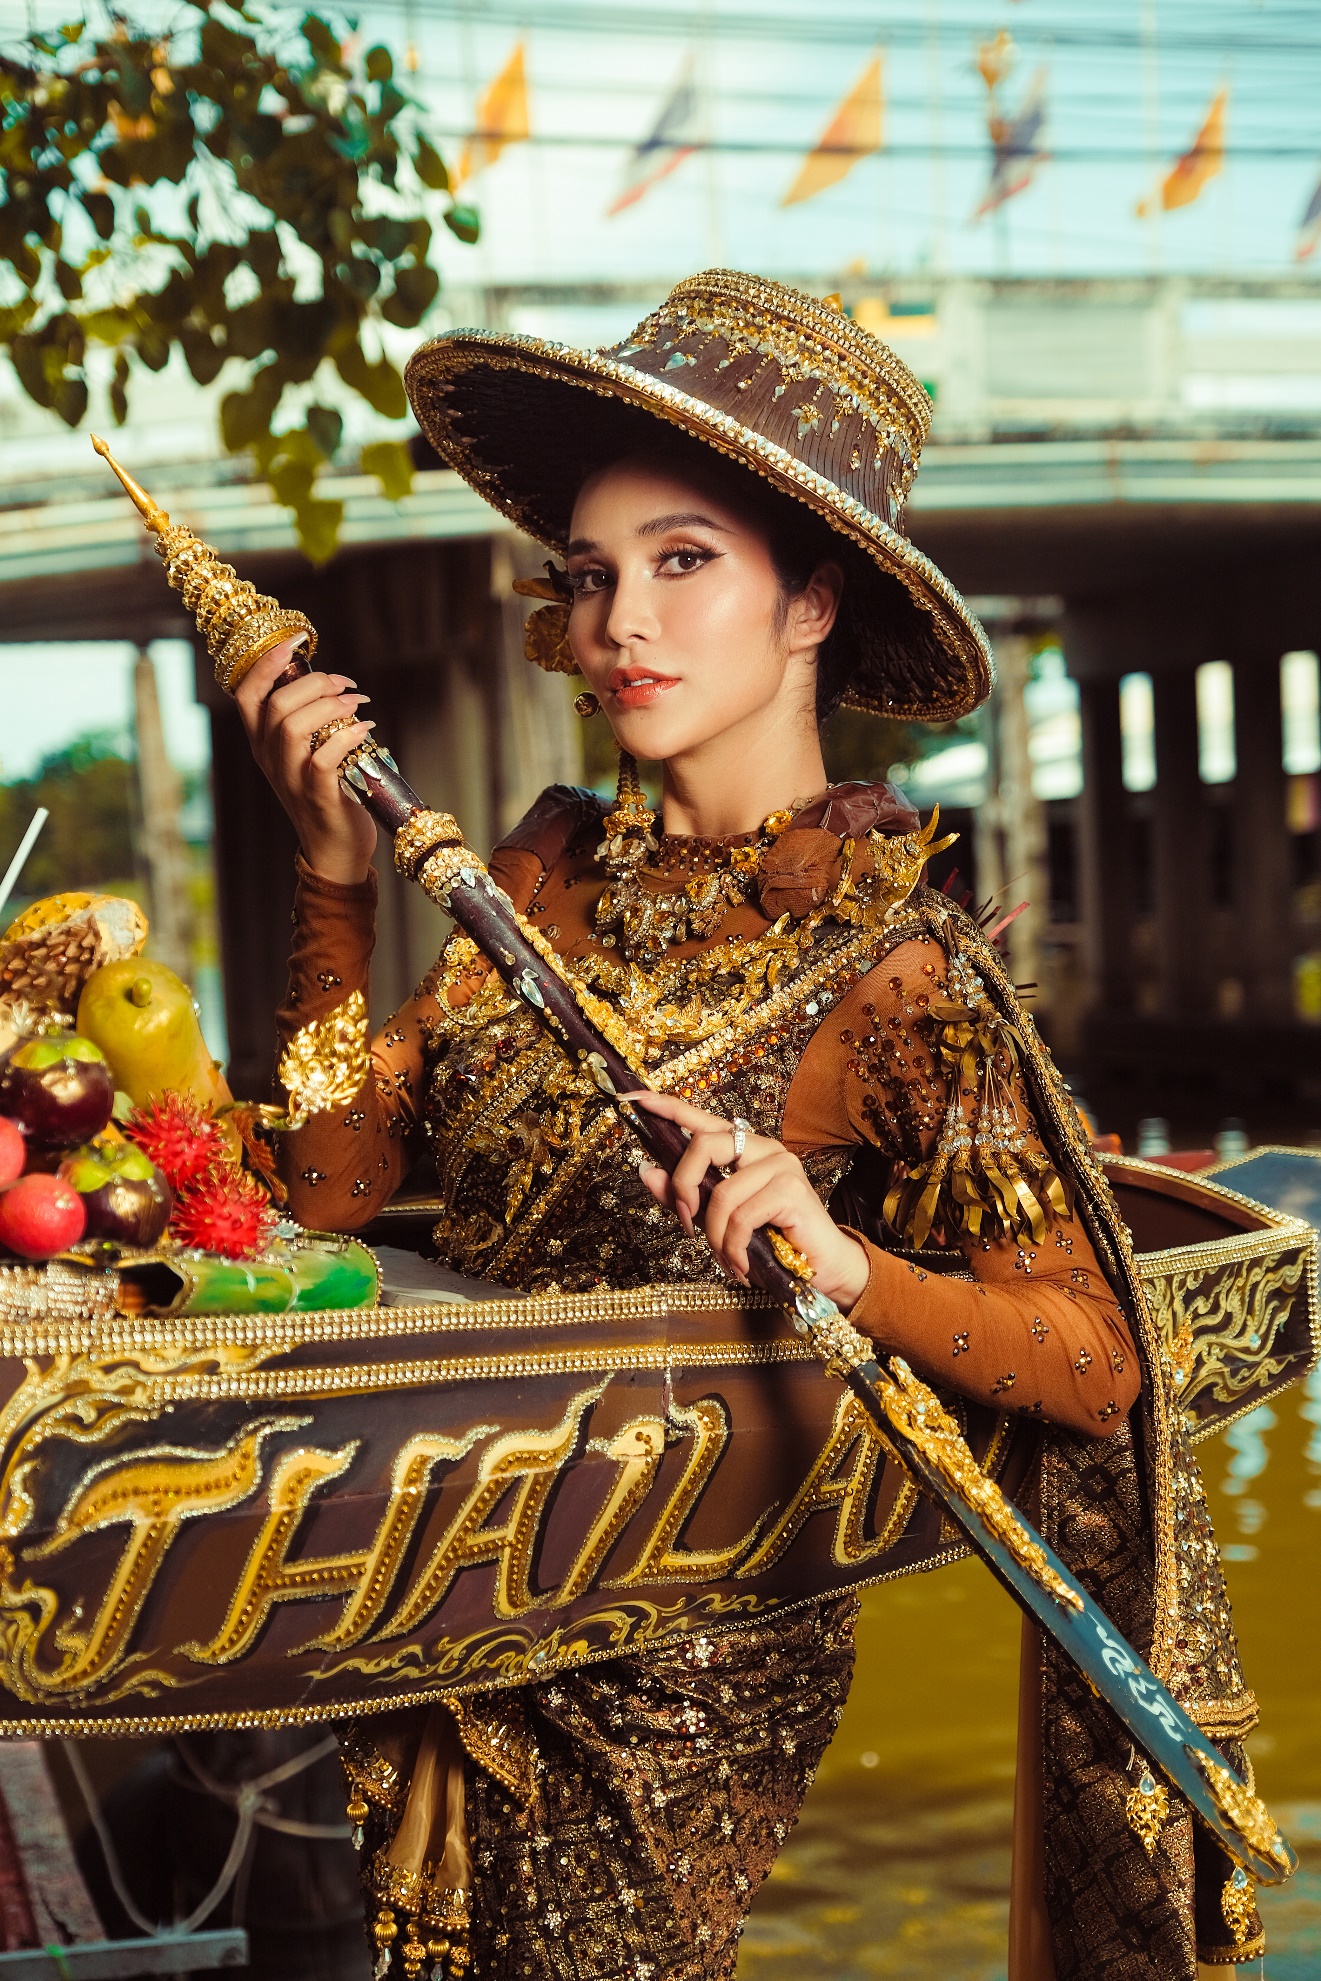 CEO Hương Nam Production House gây sốt cộng đồng mạng với bộ ảnh “National costume” Thái Lan - ảnh 7